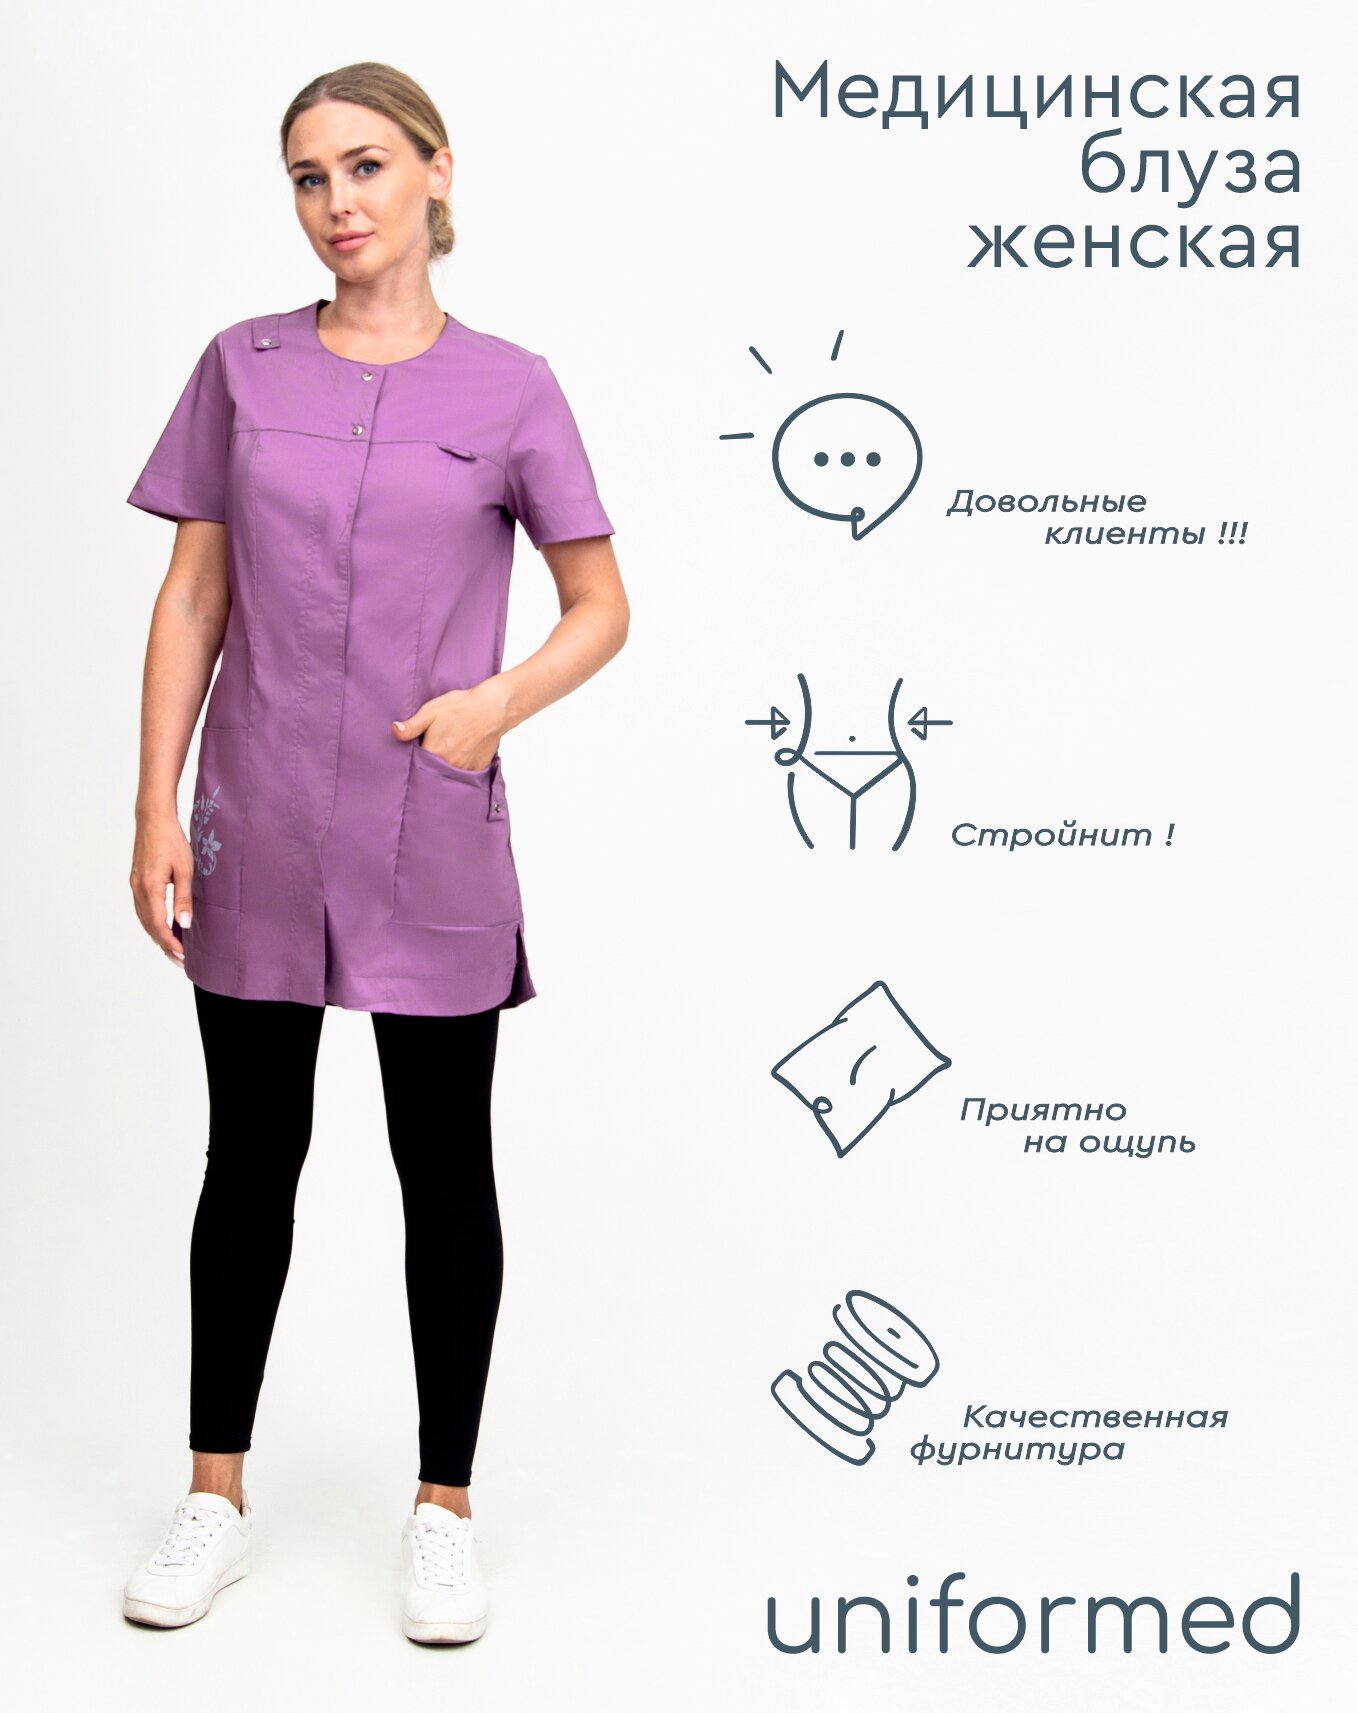 Медицинская женская блуза 406.2.4 Uniformed, ткань тиси стрейч, рукав короткий, цвет сиреневый, с термошелкографией, рост 170-176, размер 62